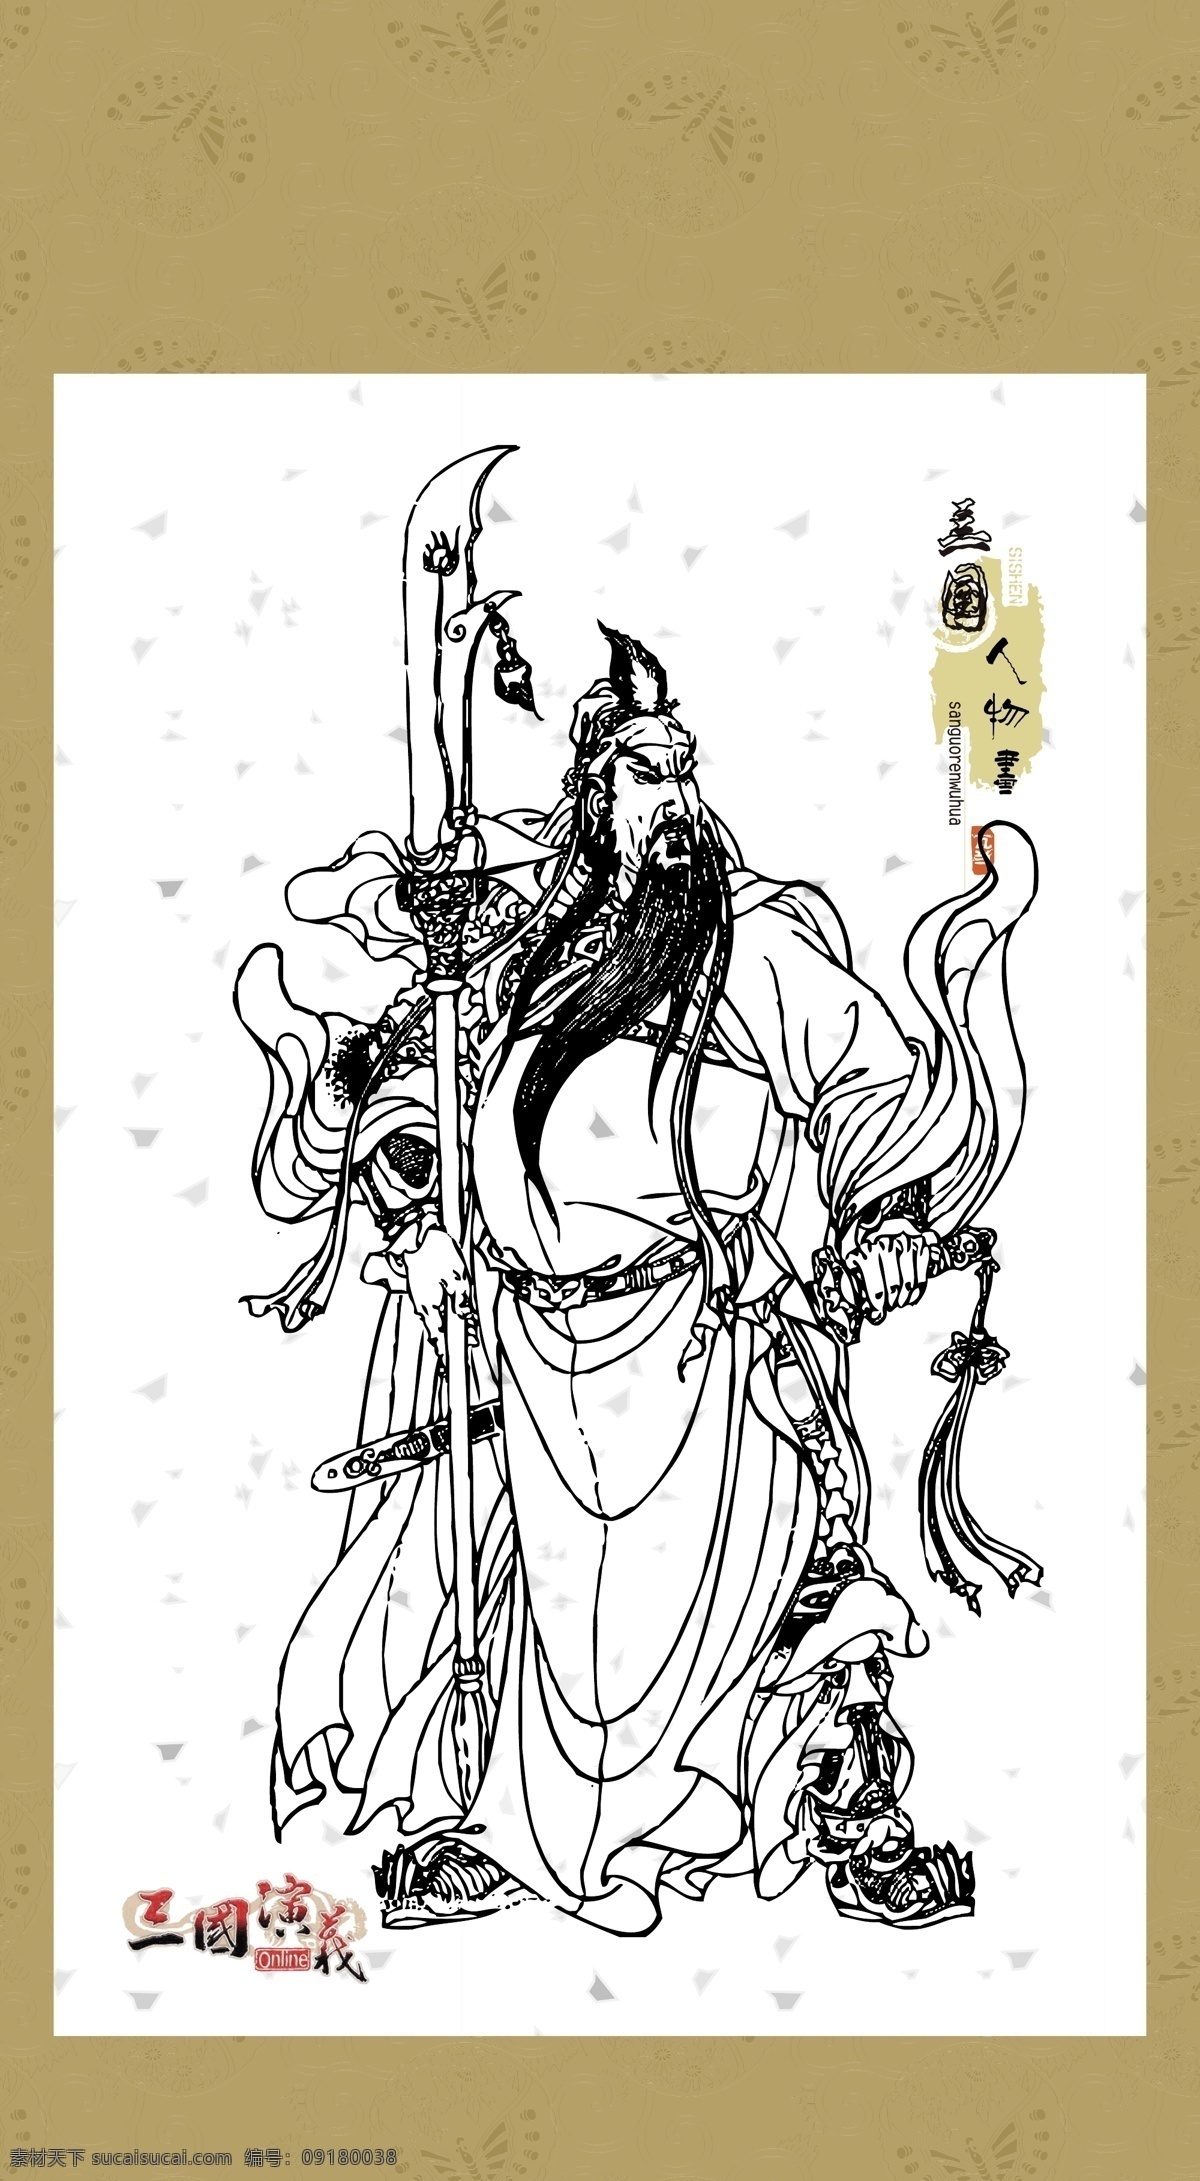 三国演义 人物画 系列 白描 图案 绘画 古典 传统纹样 人物 神话传说 传统文化 文化艺术 矢量